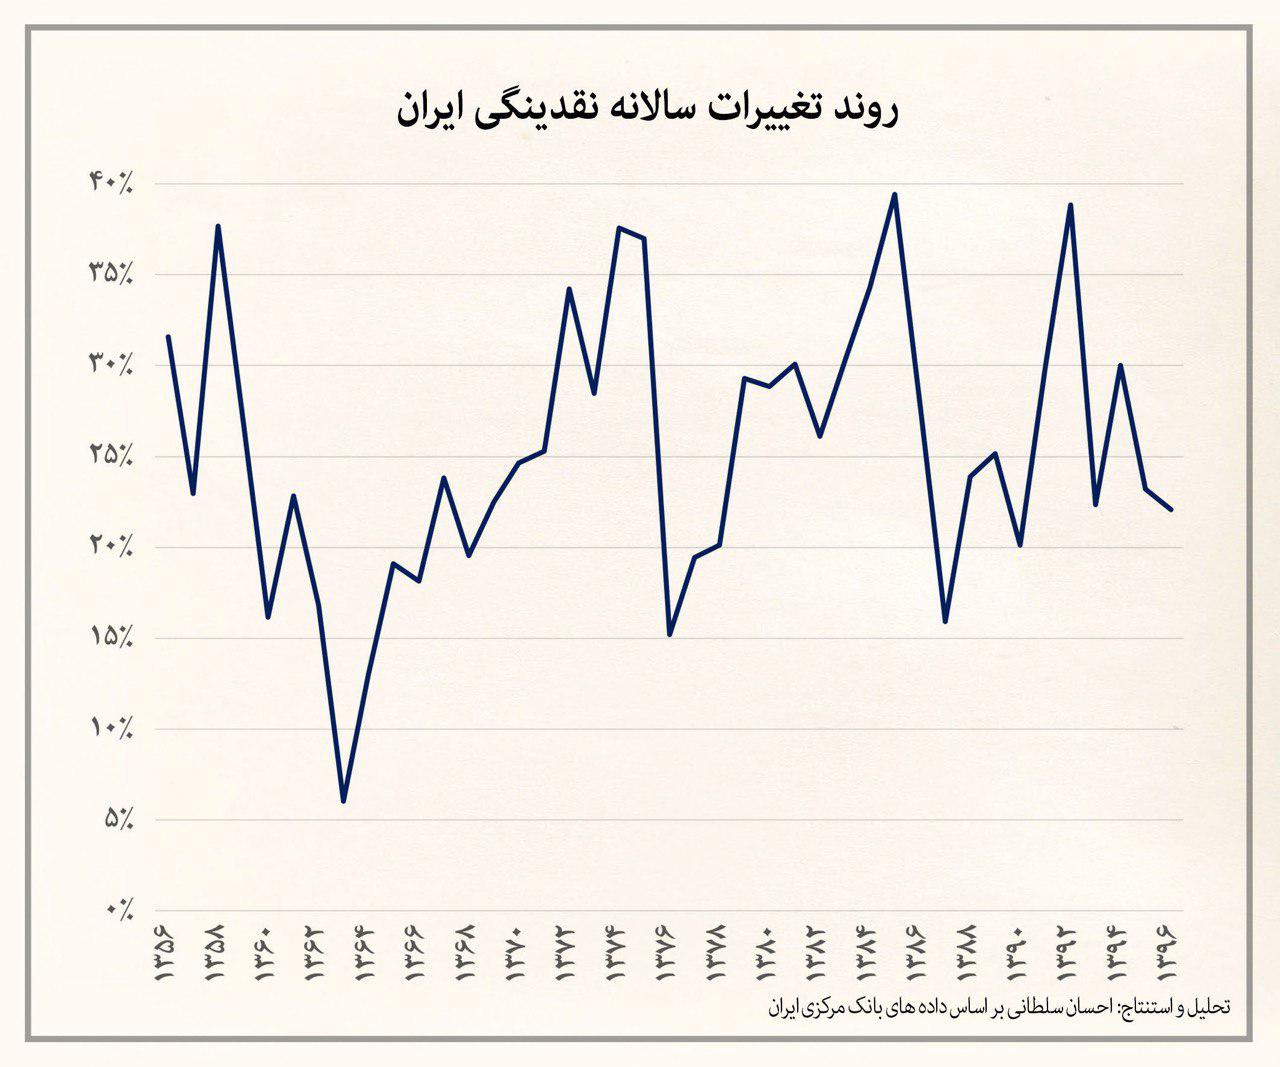 روند و عوامل رشد نقدینگی سه دهه اخیر در ایران